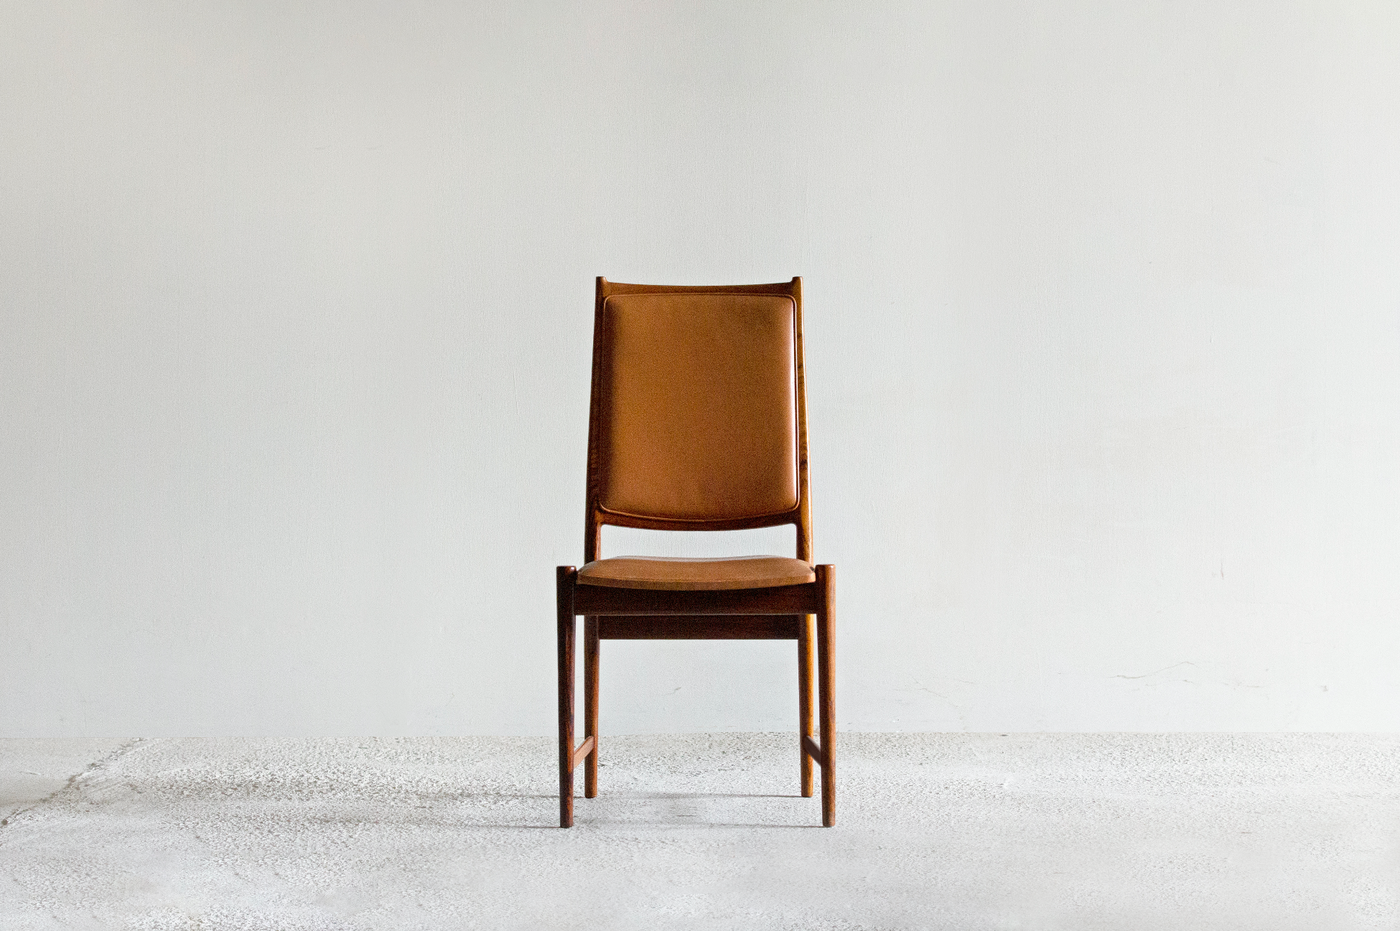 Torbjørn Afdal｜Darby Chair